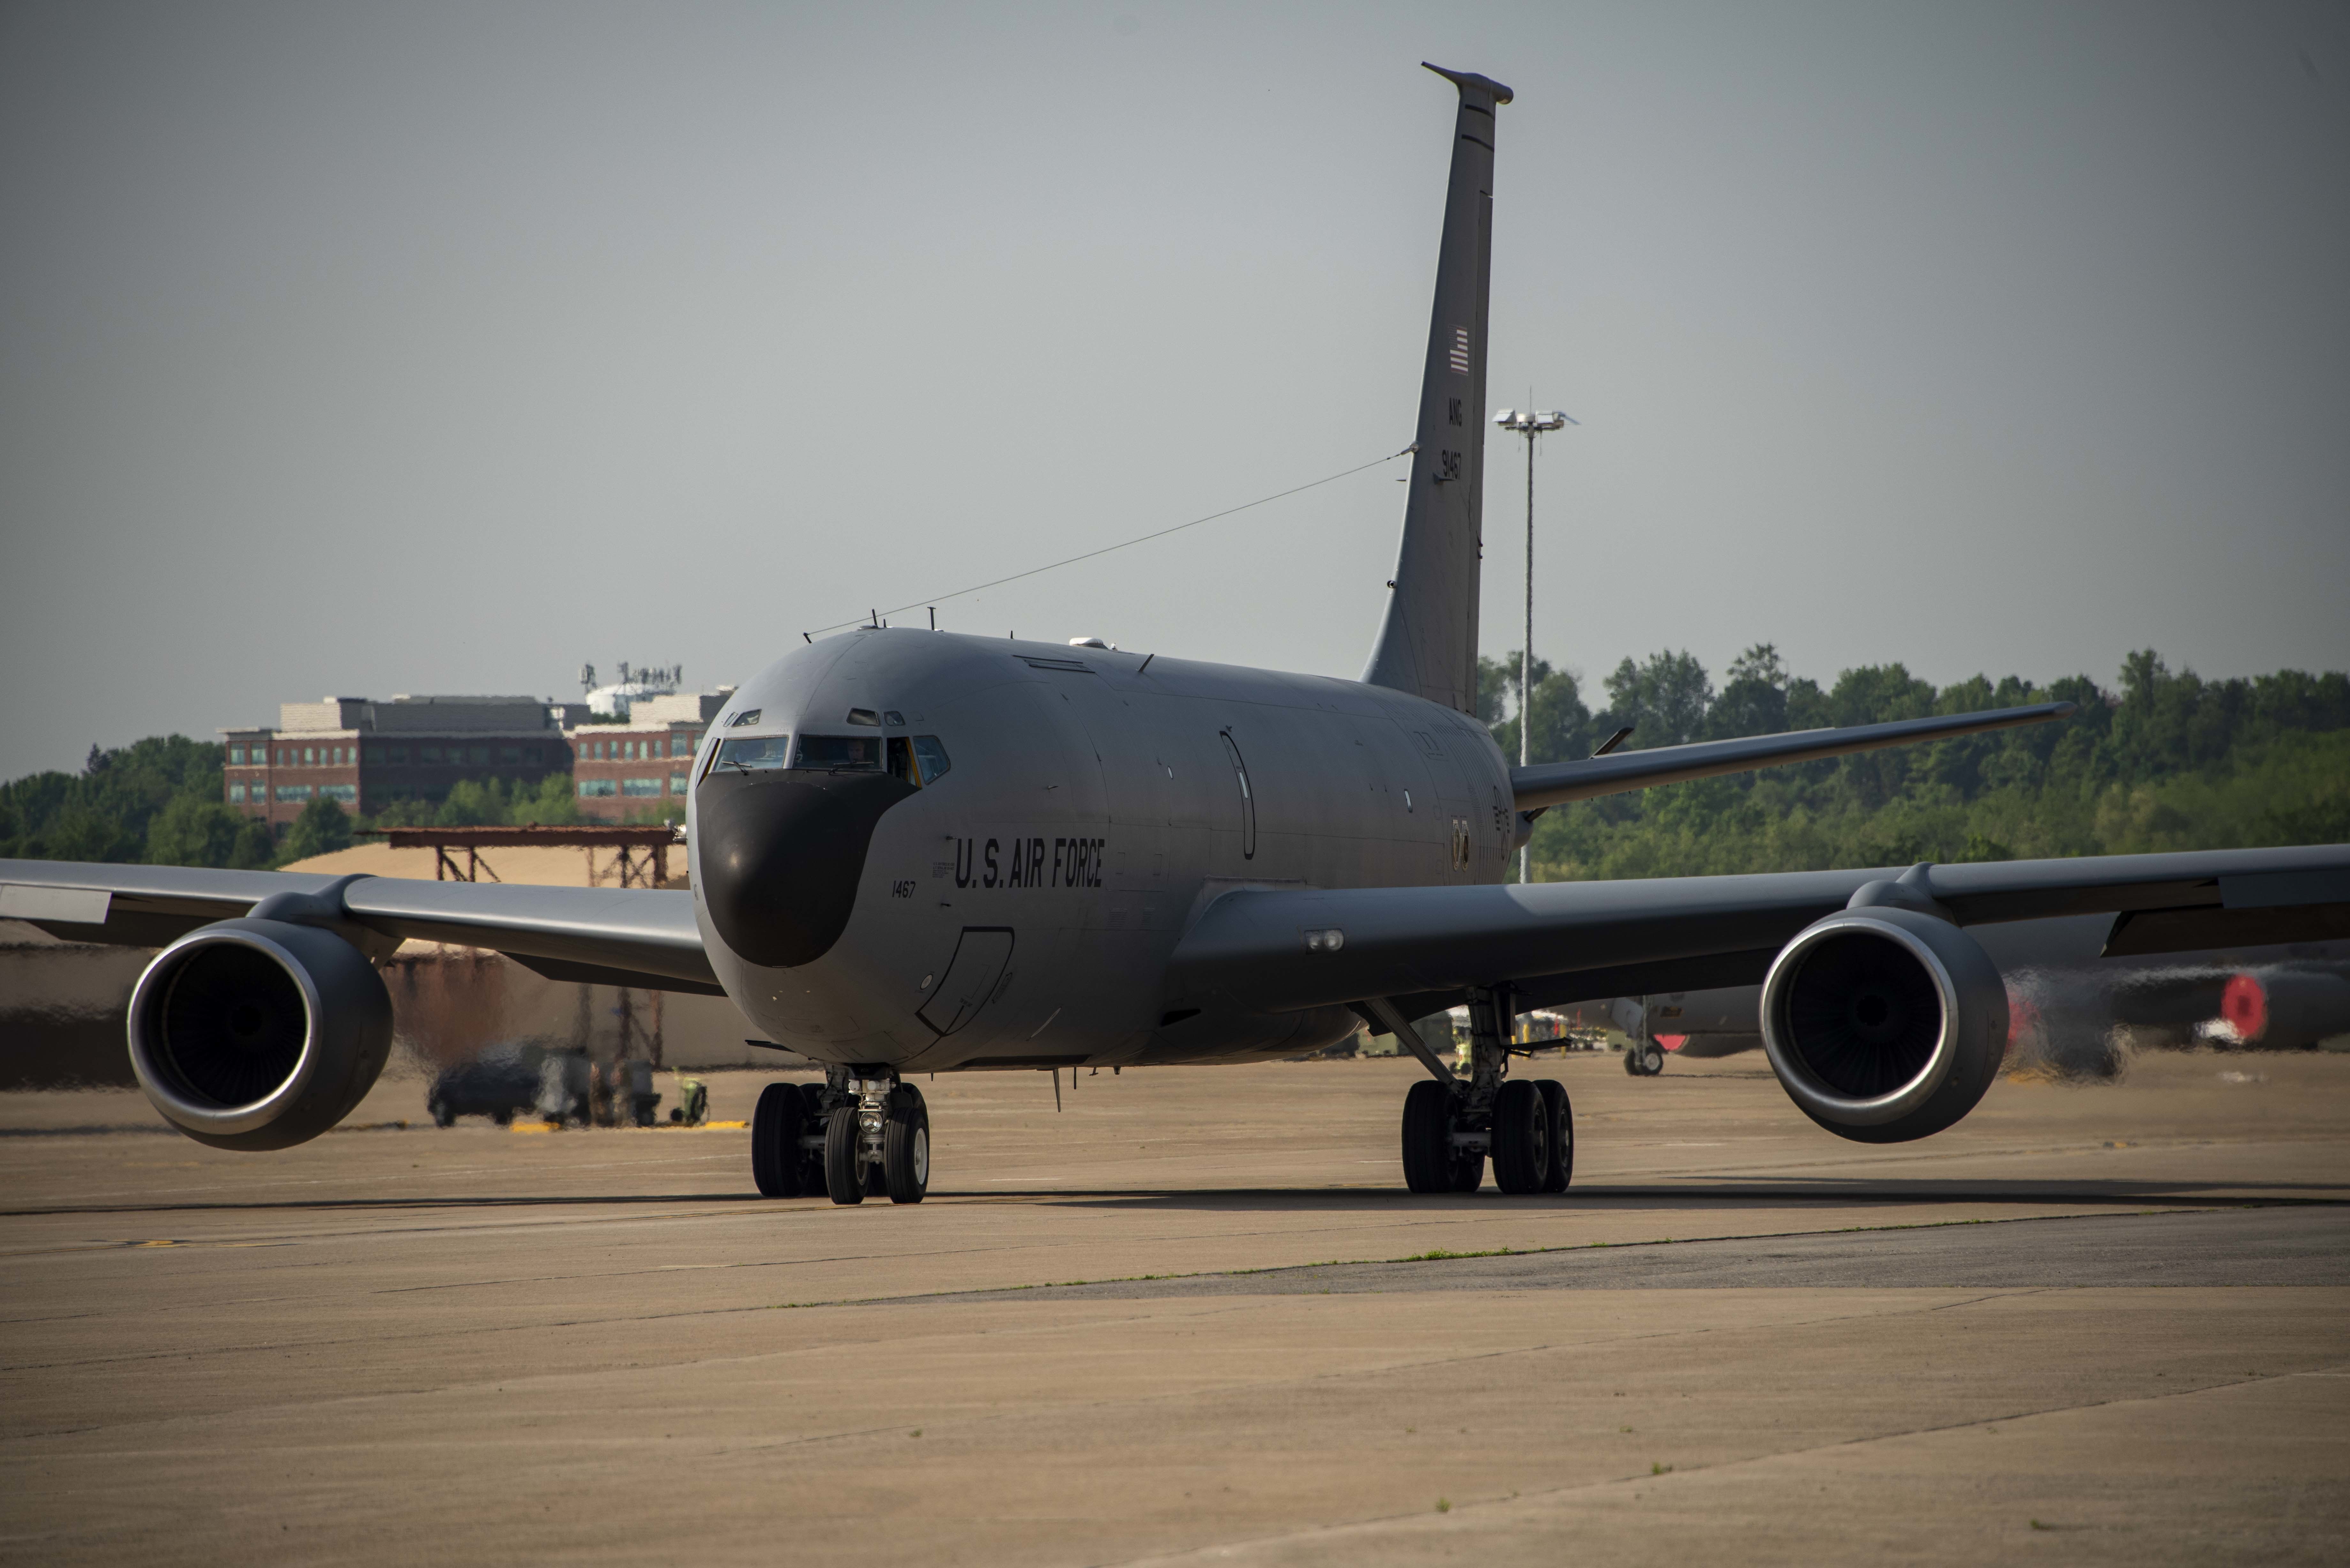 KC-135 aircraft taxi on ramp